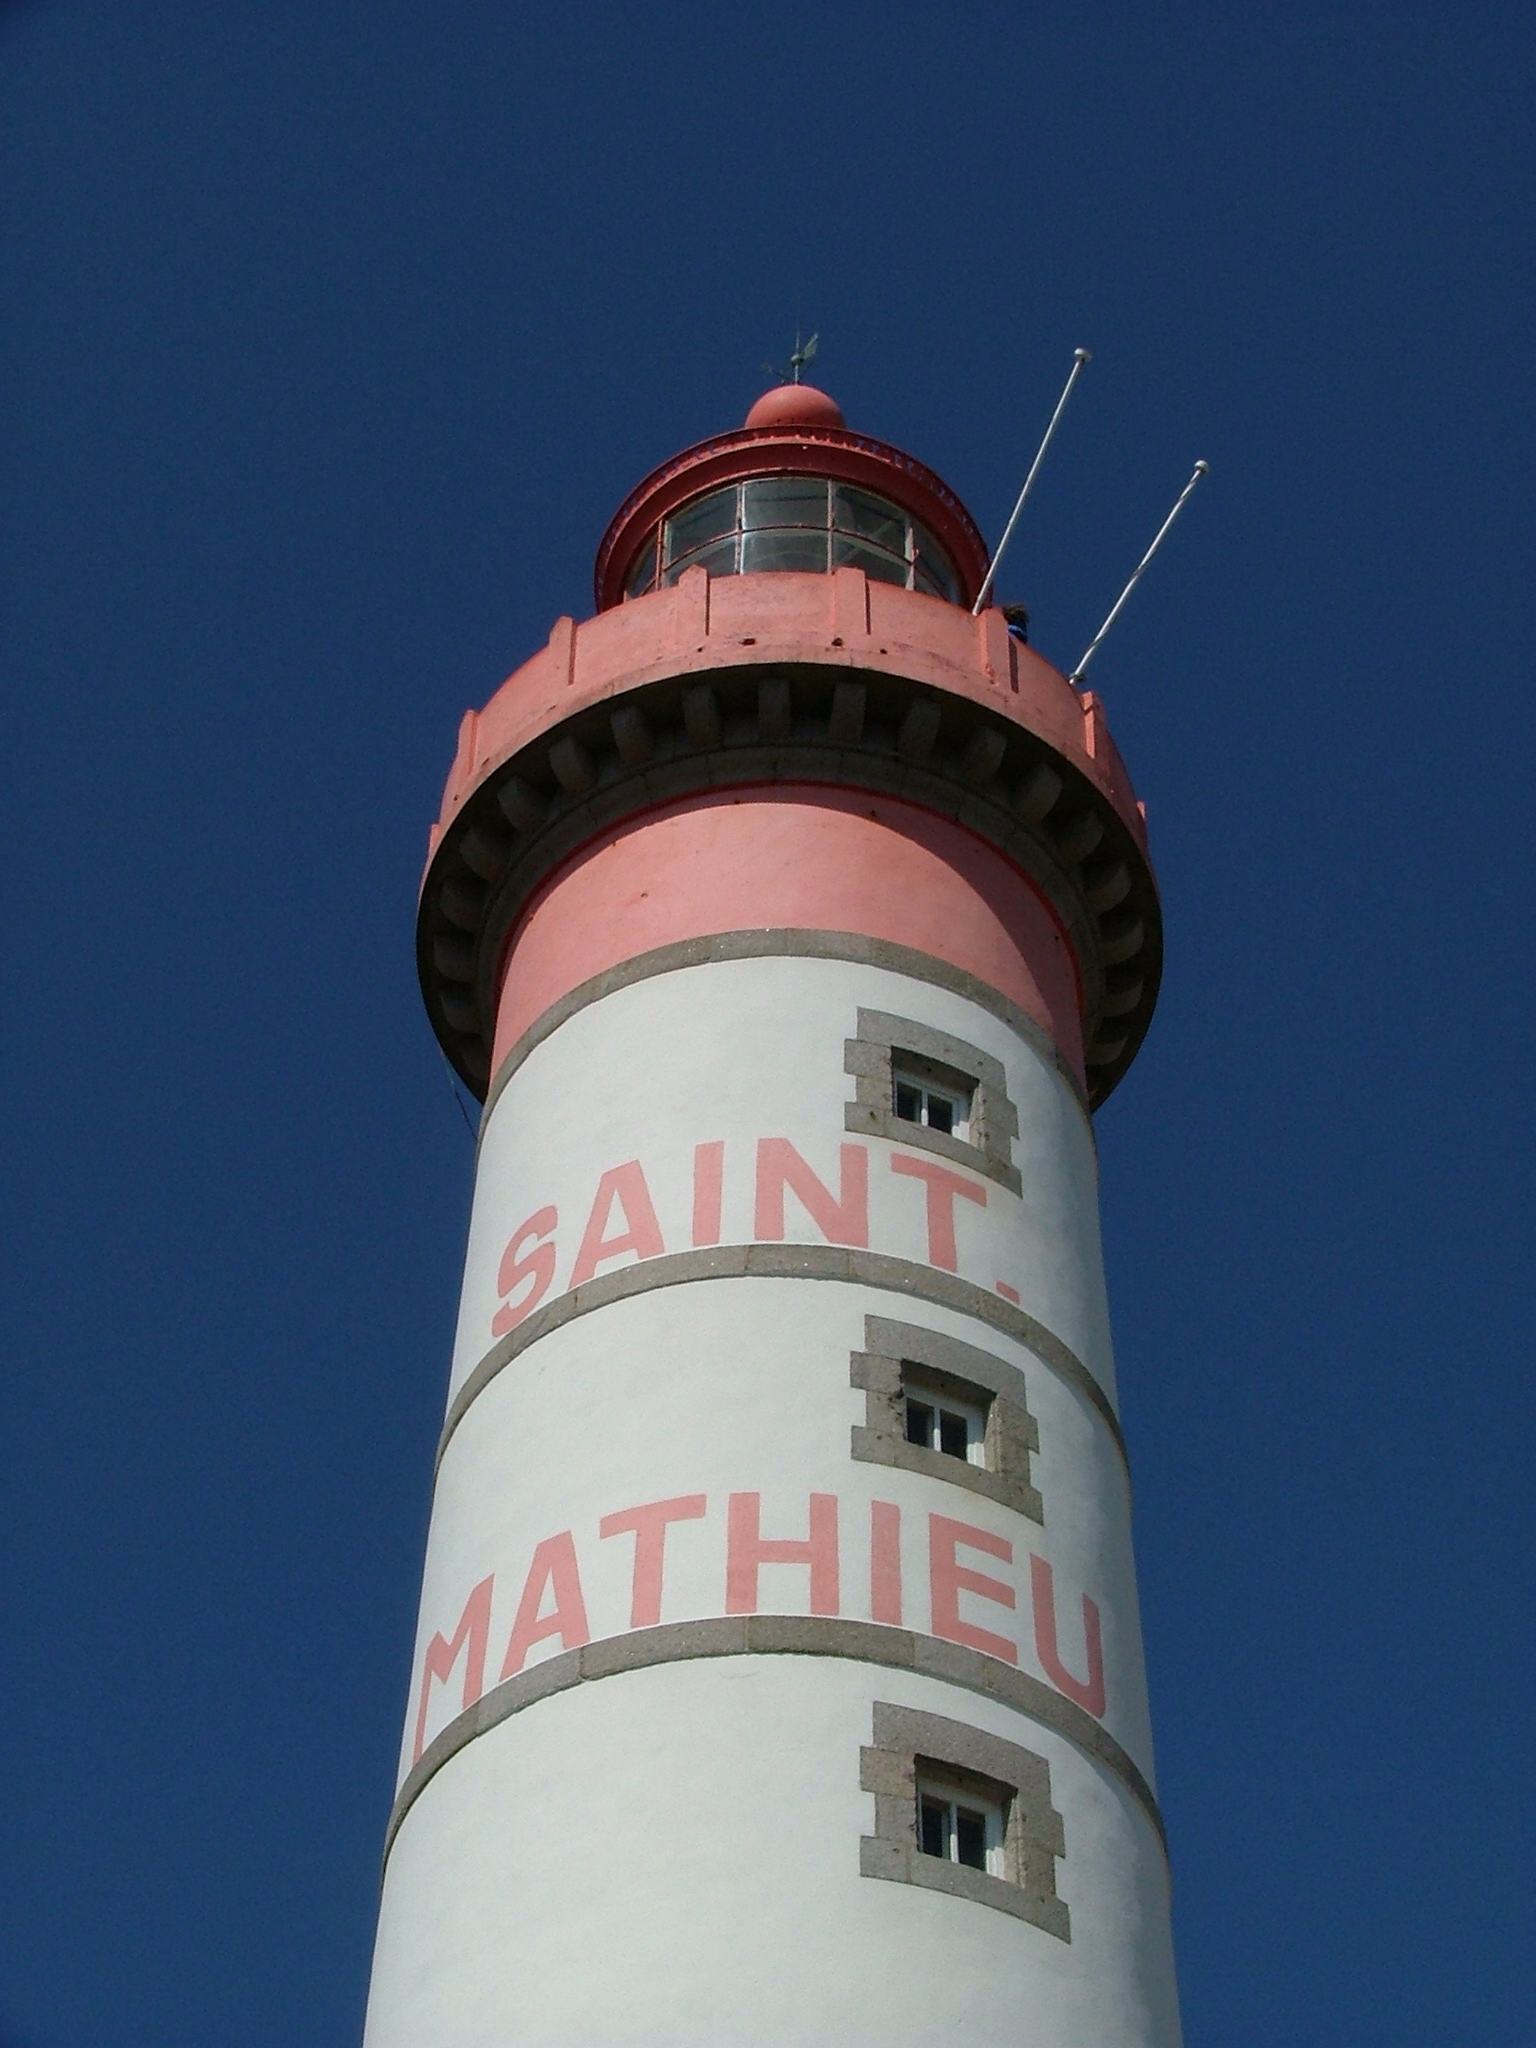 Saint Mathieu, 56 mètres au dessus de la mer